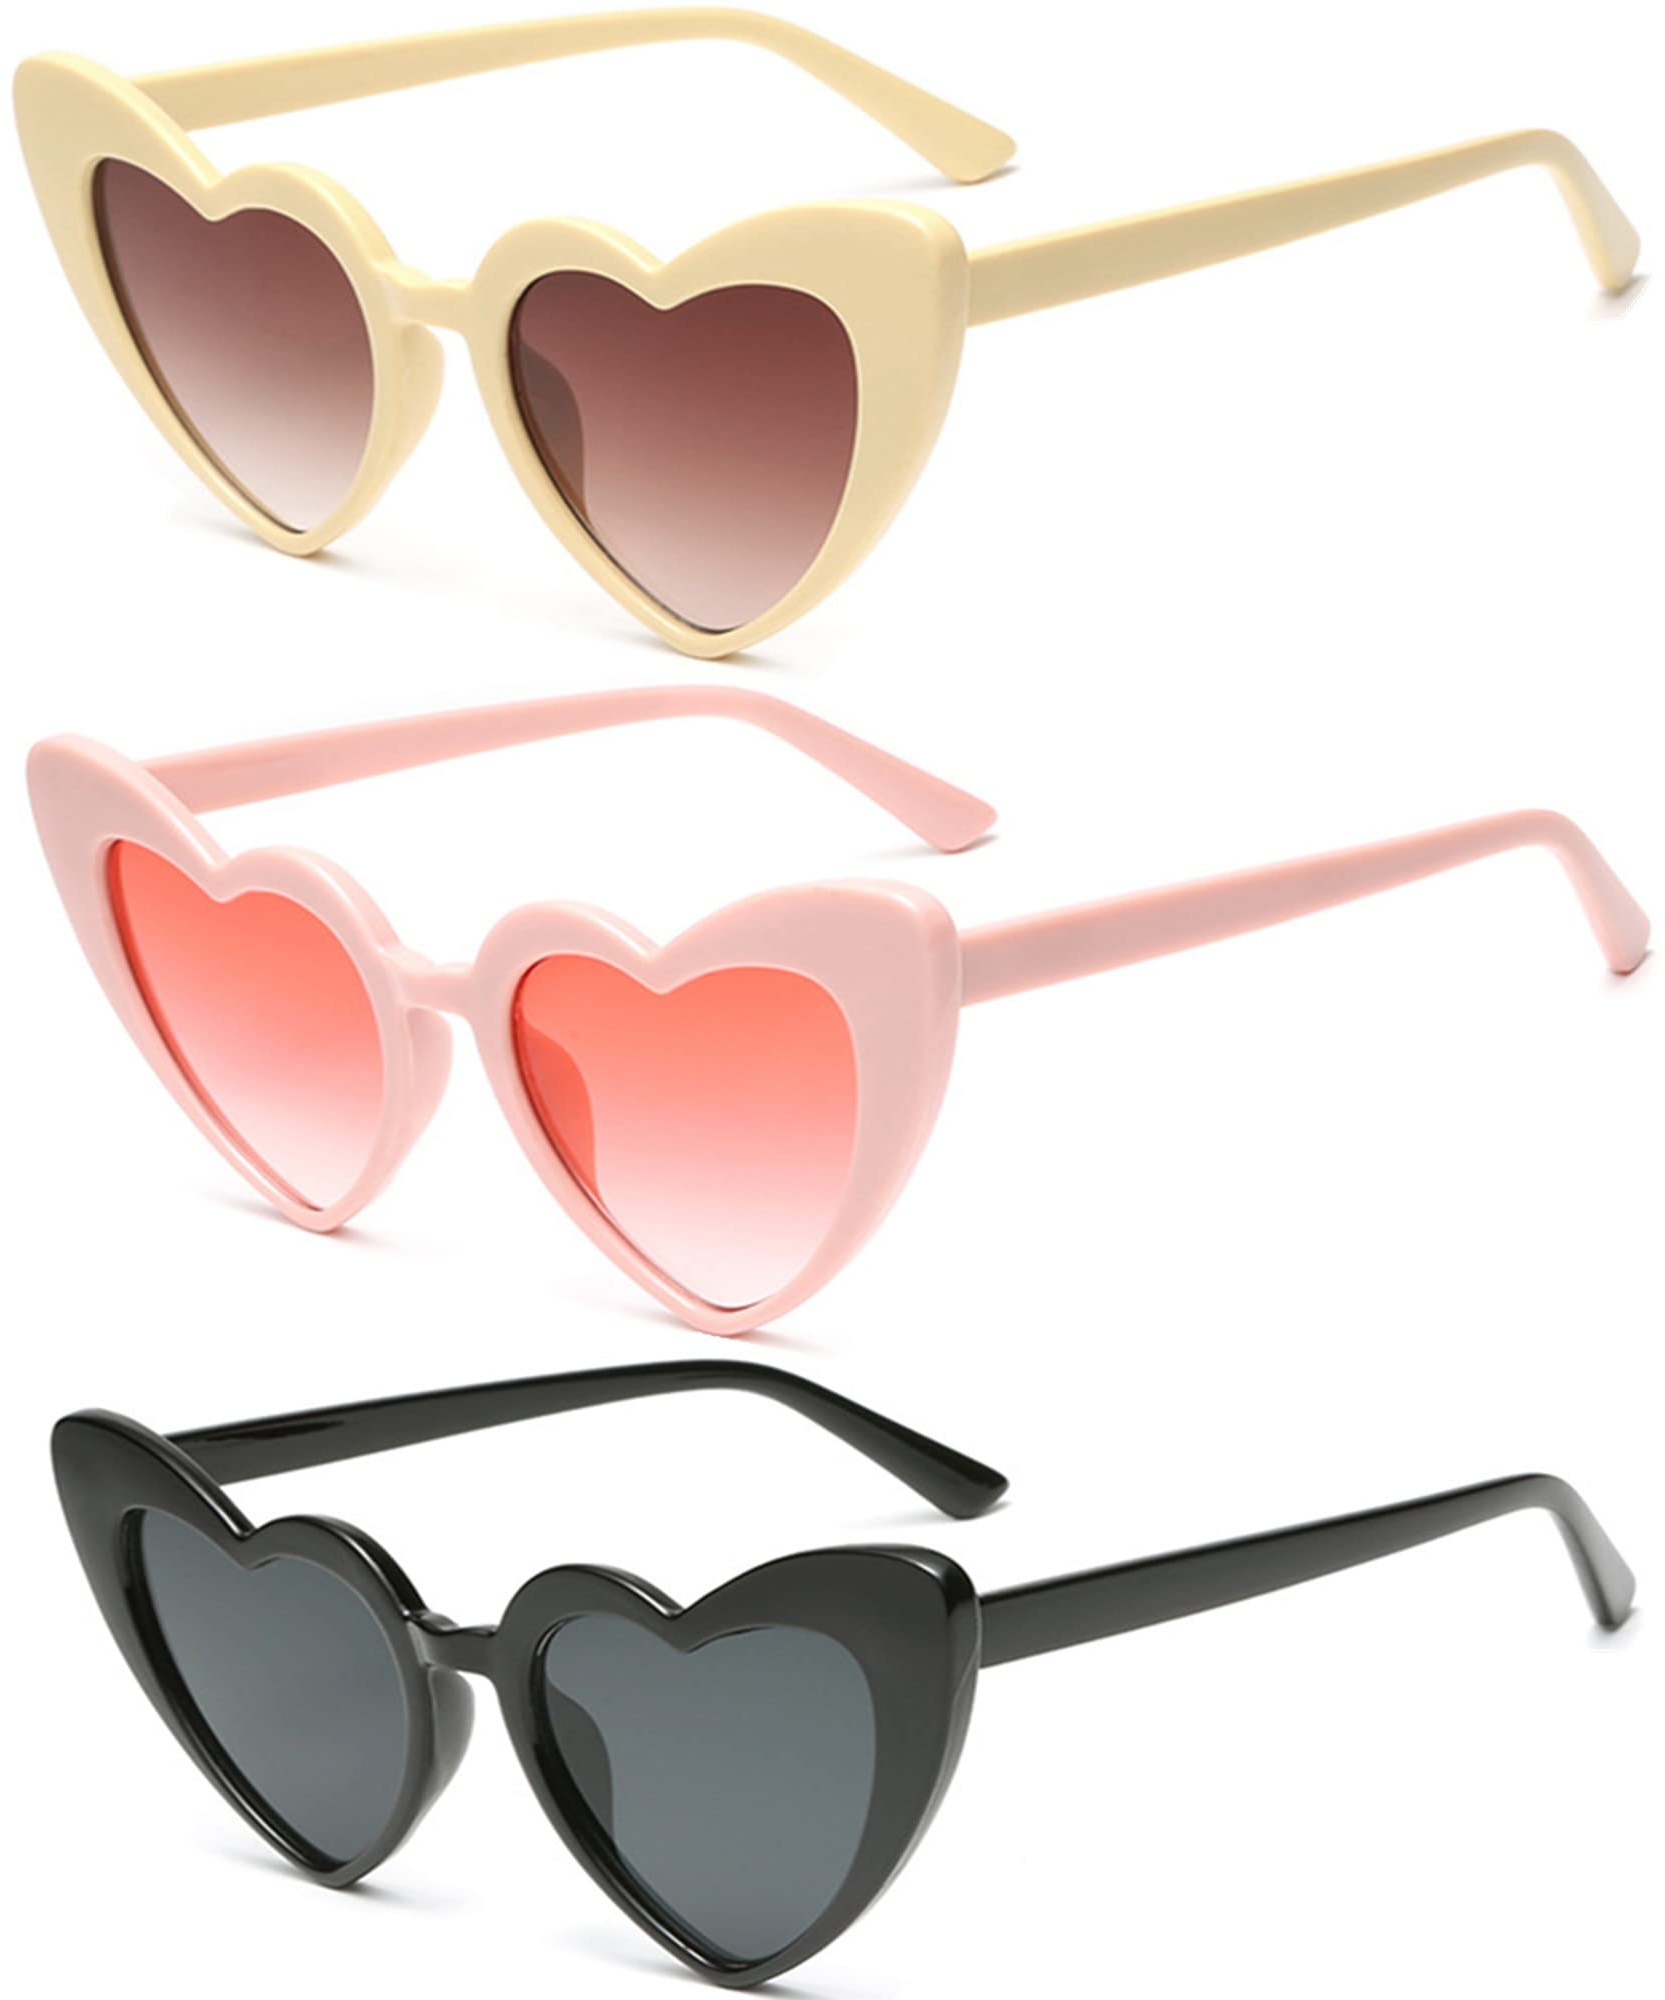 Eyegla 3 Stück Retro Herz Sonnenbrille für Damen,Vintage Herzform Brille Neon Katzenaugen Sonnenbrille Set für Damen Frauen - S